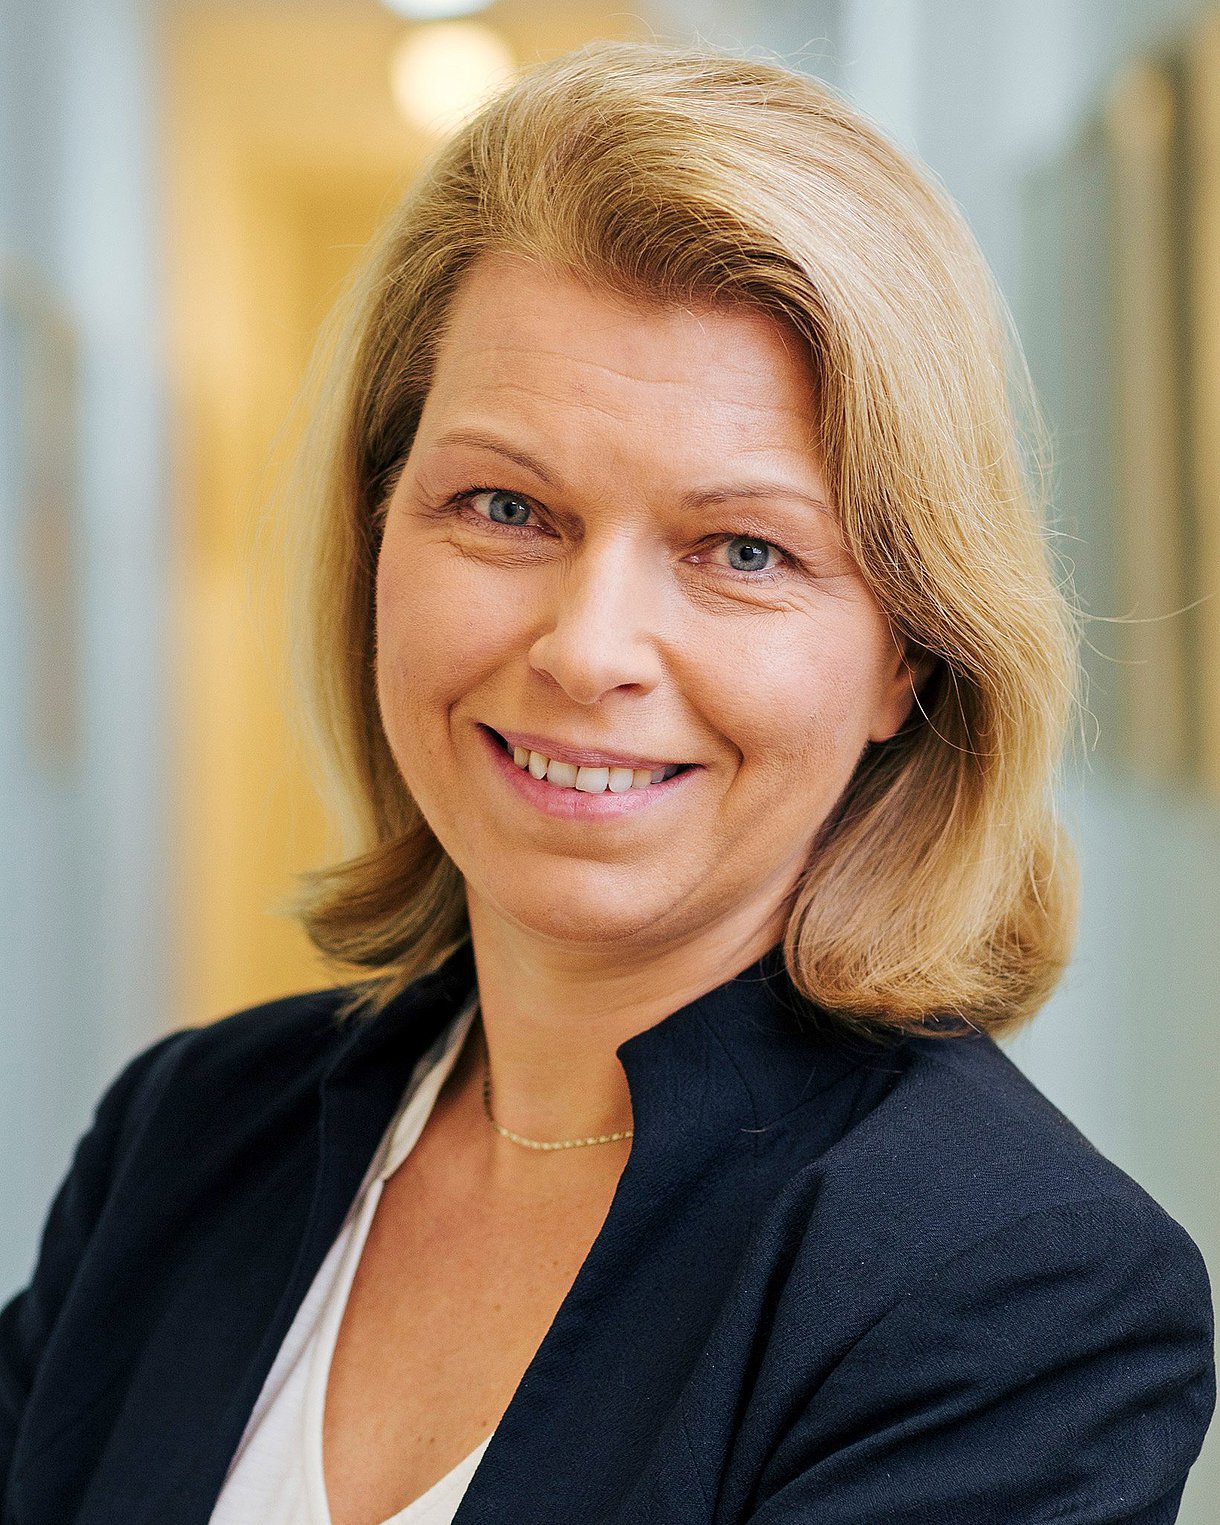 Foto: Porträtbild von Priv.-Doz. Dr. Ute Seeland, Vorstandsvorsitzende der Deutschen Gesellschaft für Geschlechtsspezifische Medizin.